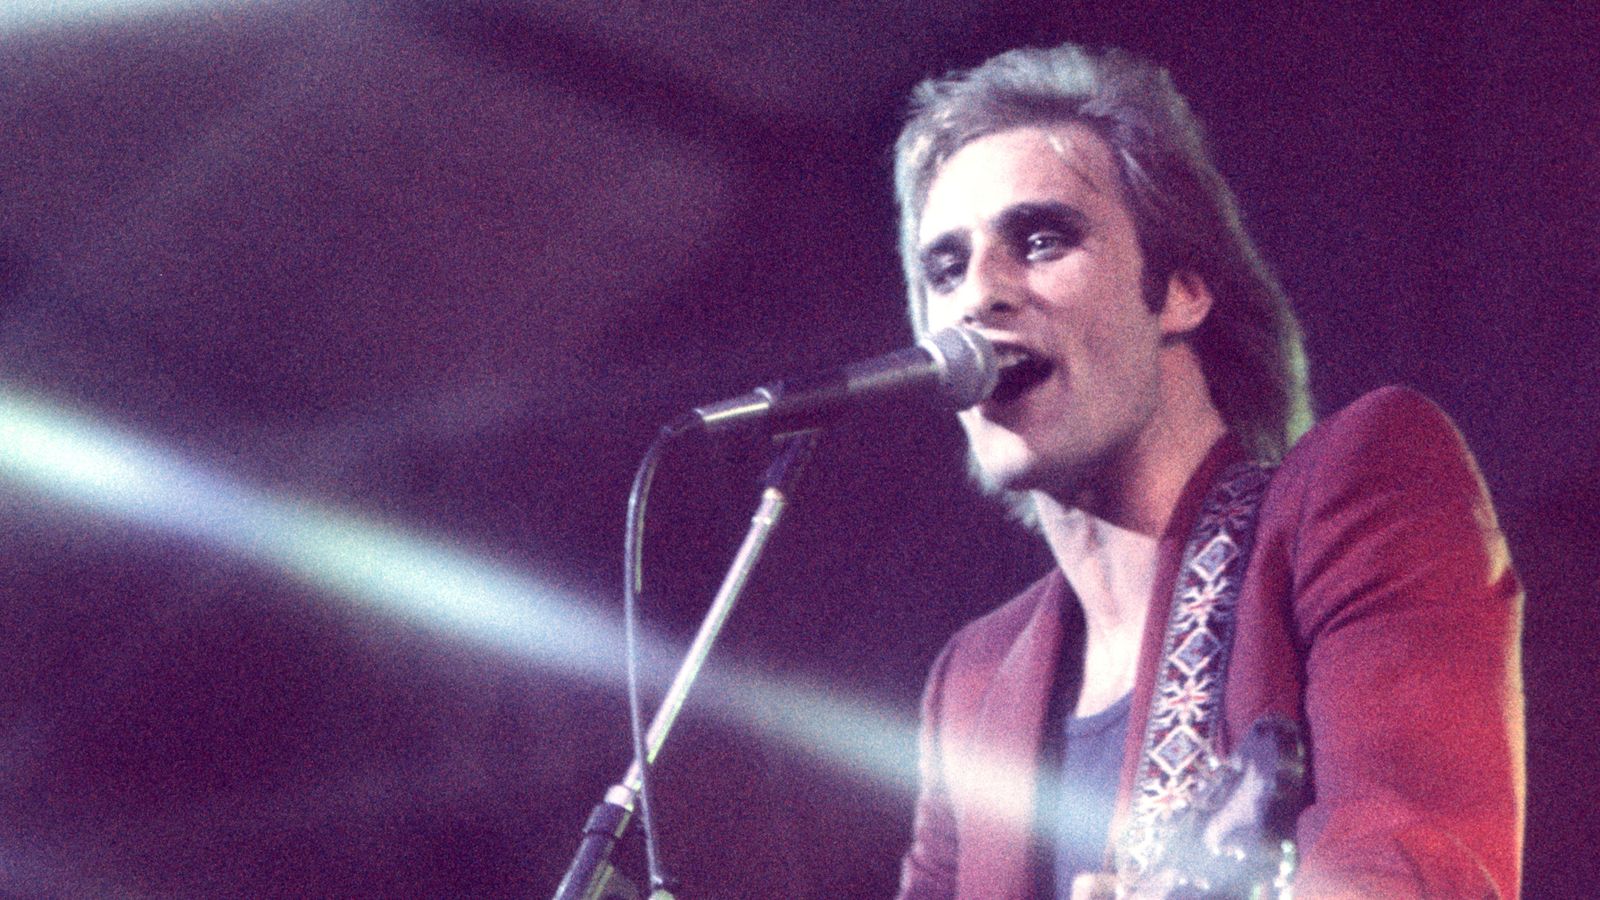 Steve Harley, frontman of rock group Cockney Rebel, has died